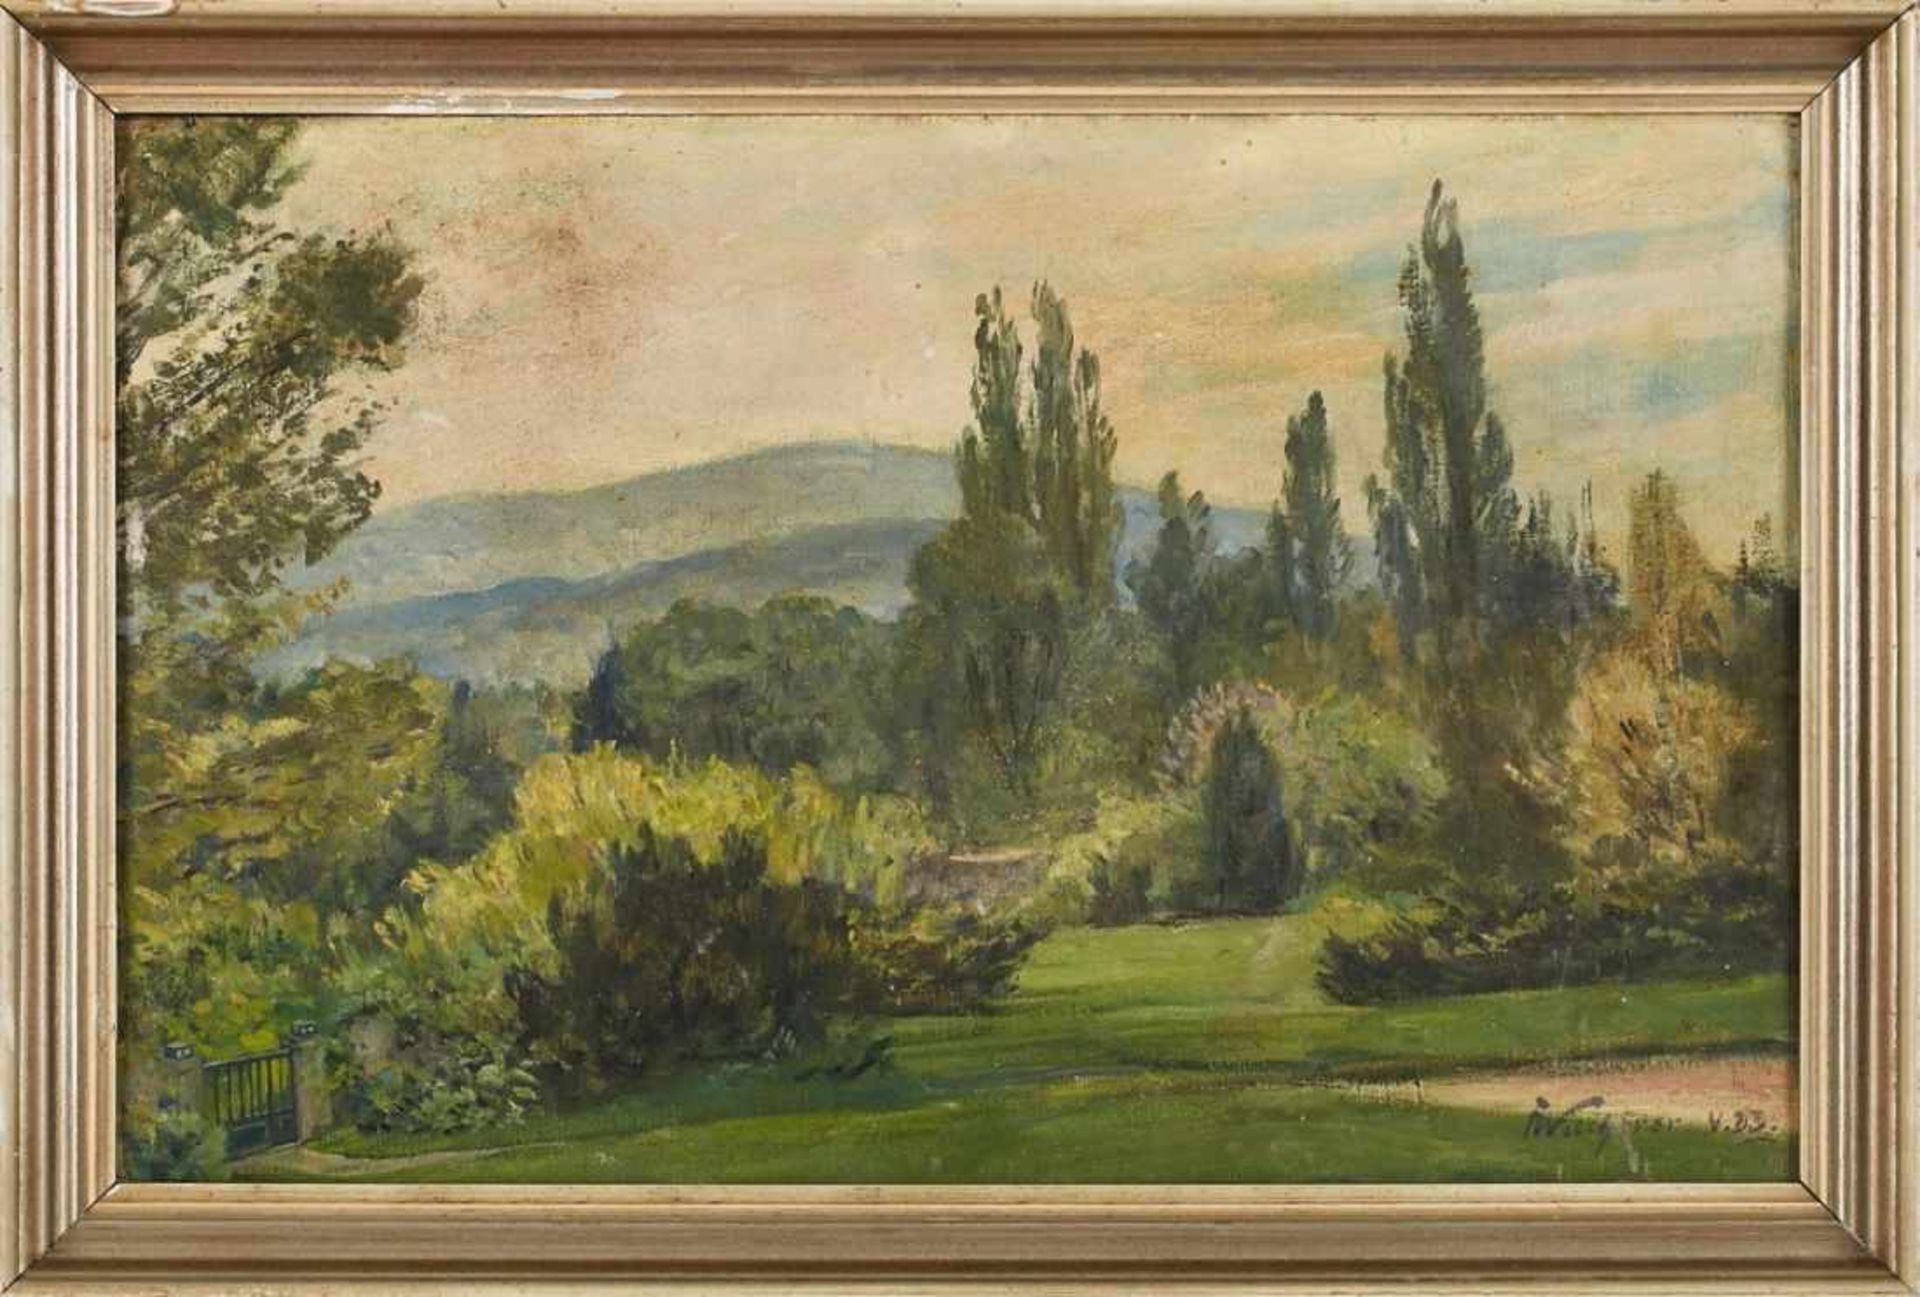 Gemälde Fritz Wucherer1873 Basel - 1948 Kronberg Studiert von 1892-1894 bei Anton Burger. An-